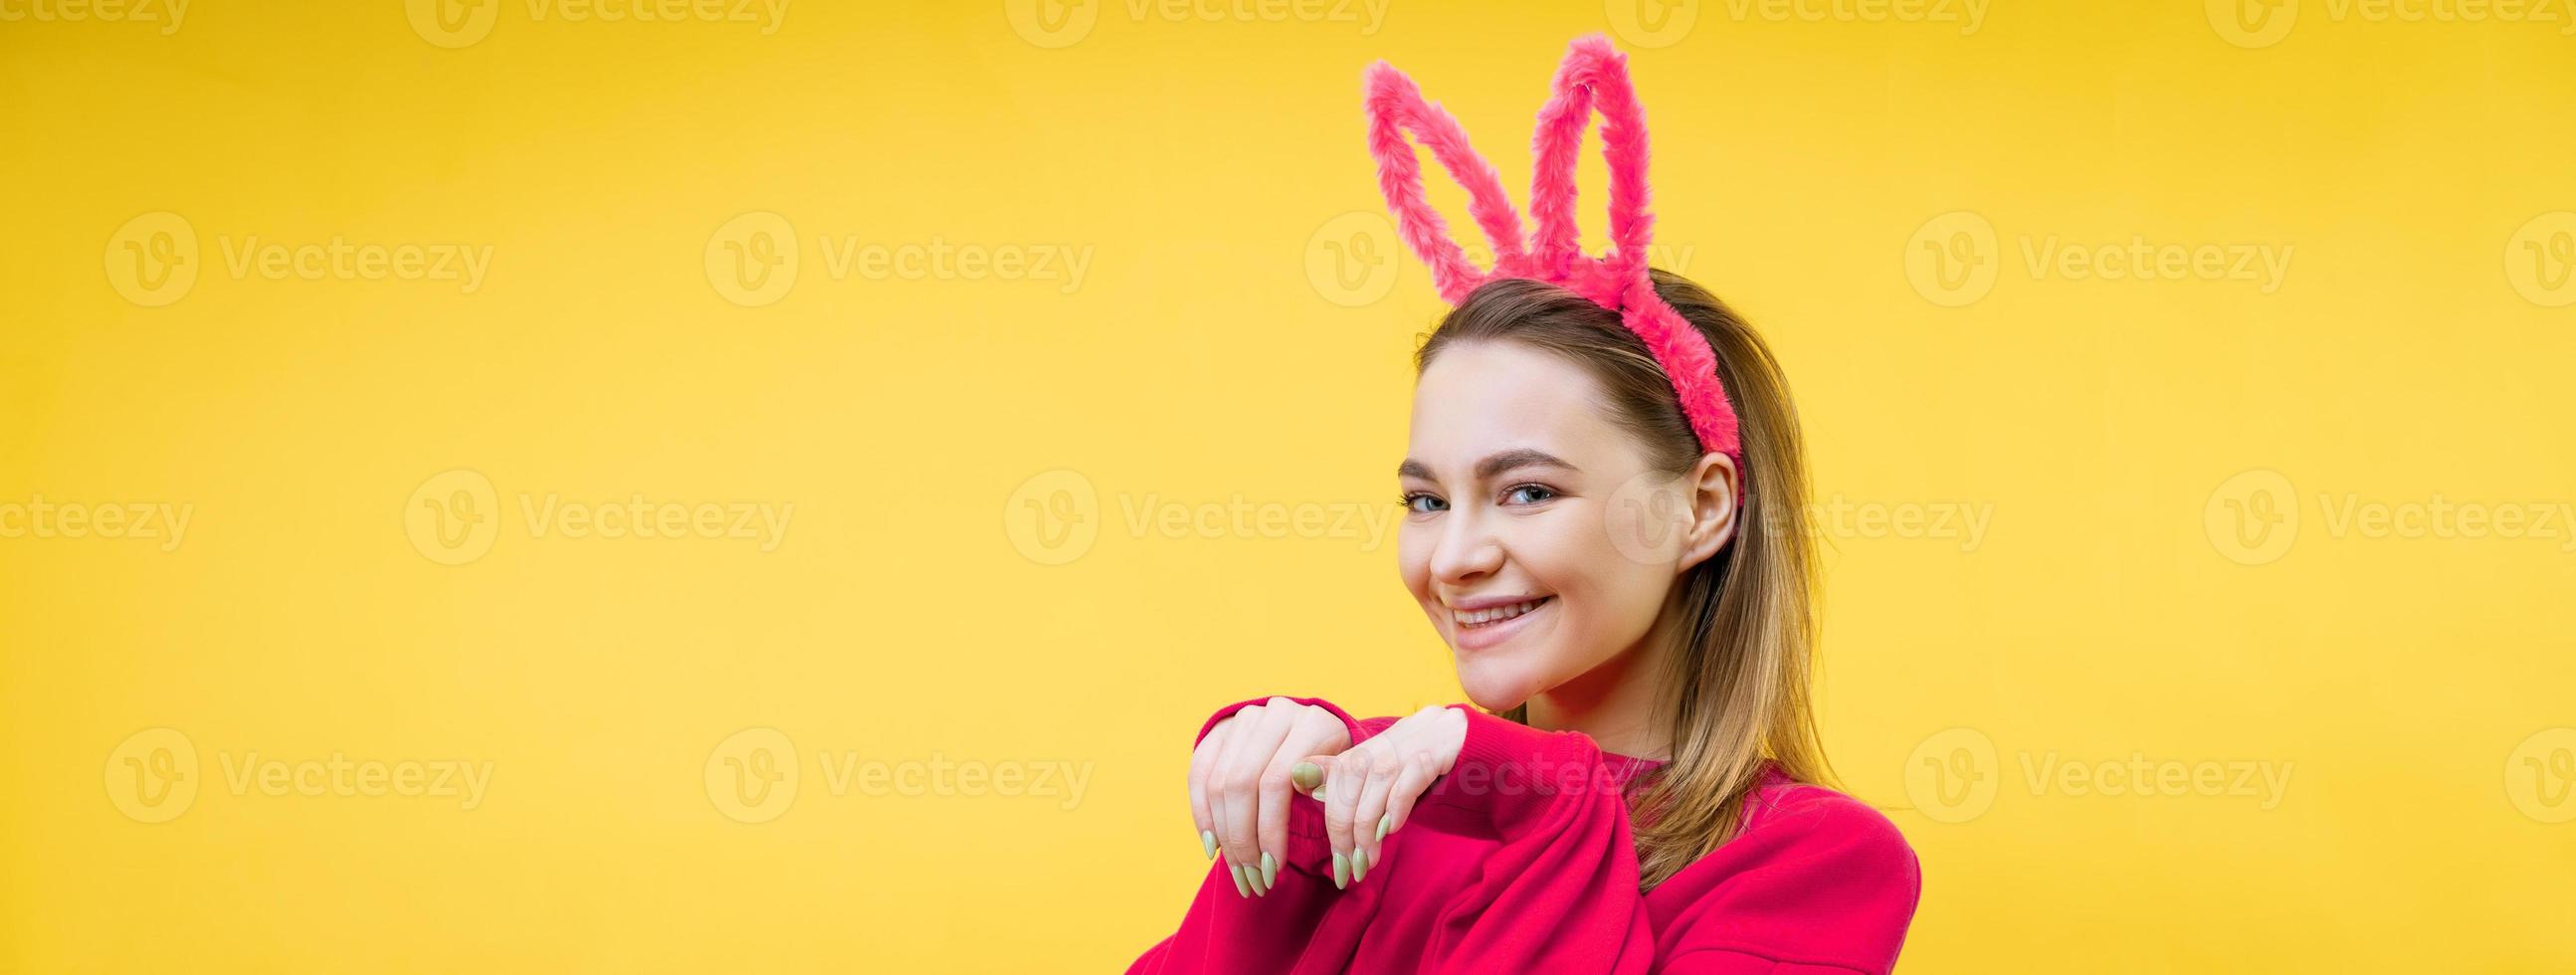 jovem em orelhas de coelho em um fundo amarelo foto